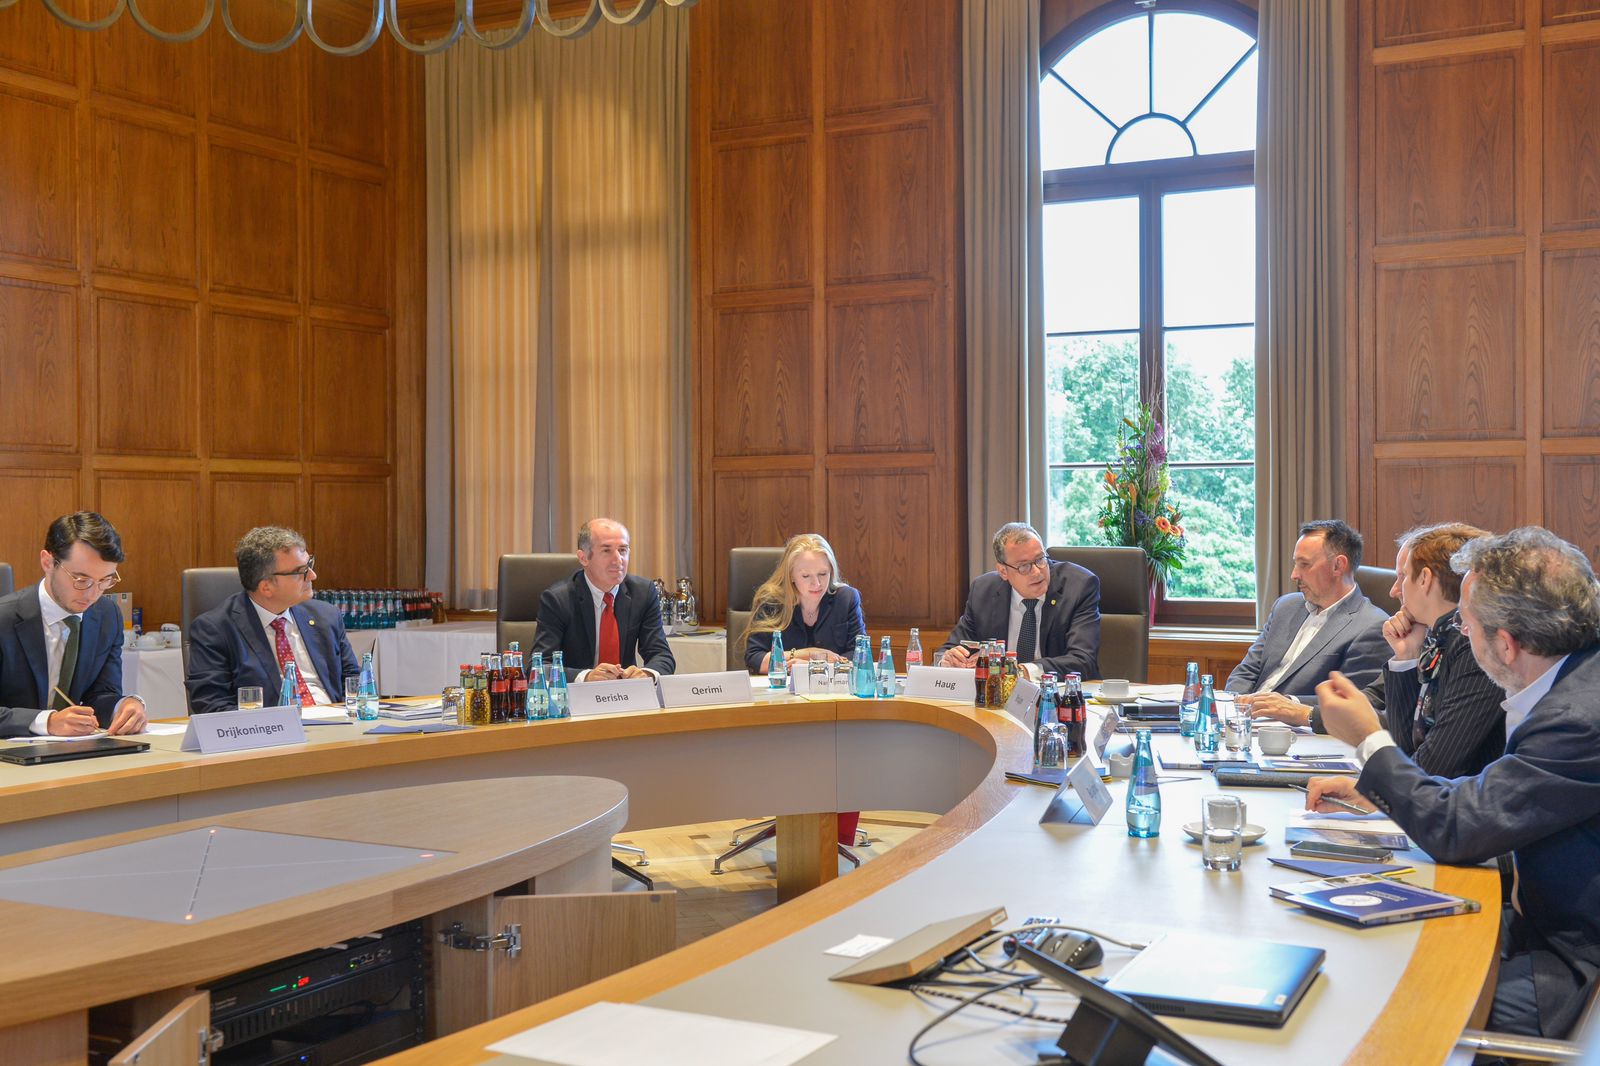 UP-ja dhe Akademia Kombëtare Gjermane e Shkencave diskutojnë për format e bashkëpunimit në kuadër të Procesit të Berlinit